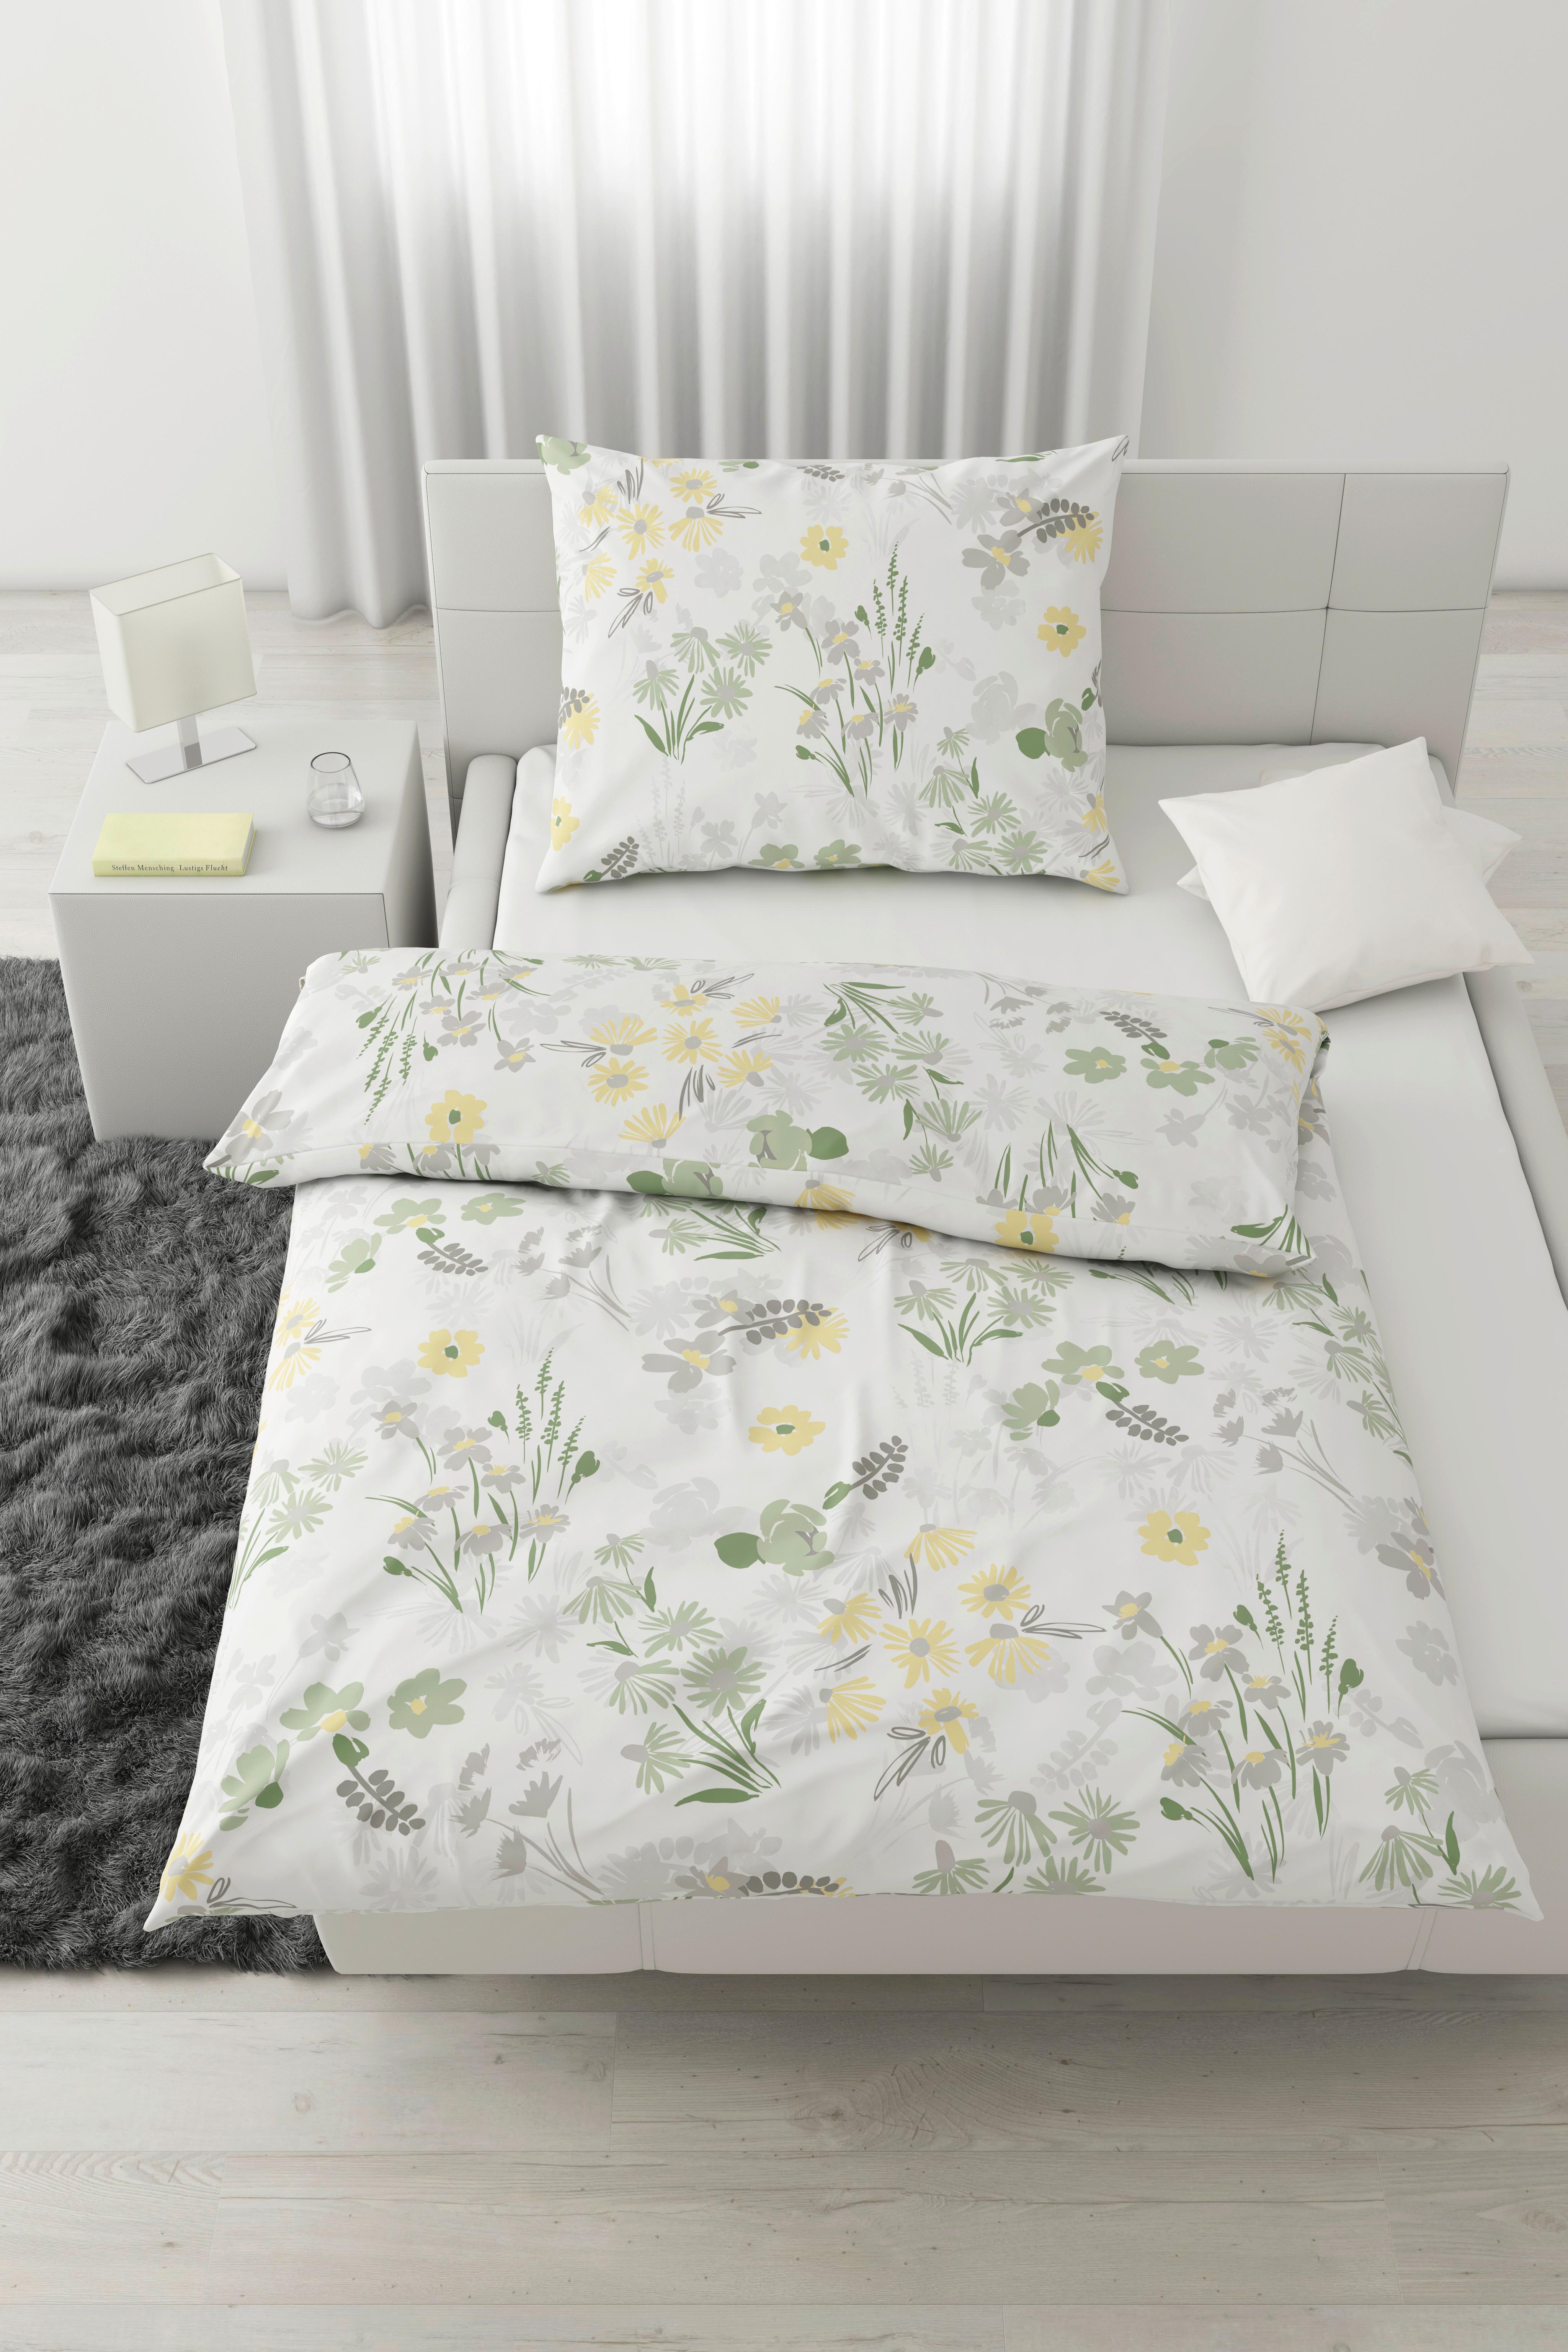 Bettwäsche Anneliese mit Blumenmotiv ca. 140x200cm - Grün, KONVENTIONELL, Textil (140/200cm) - Modern Living